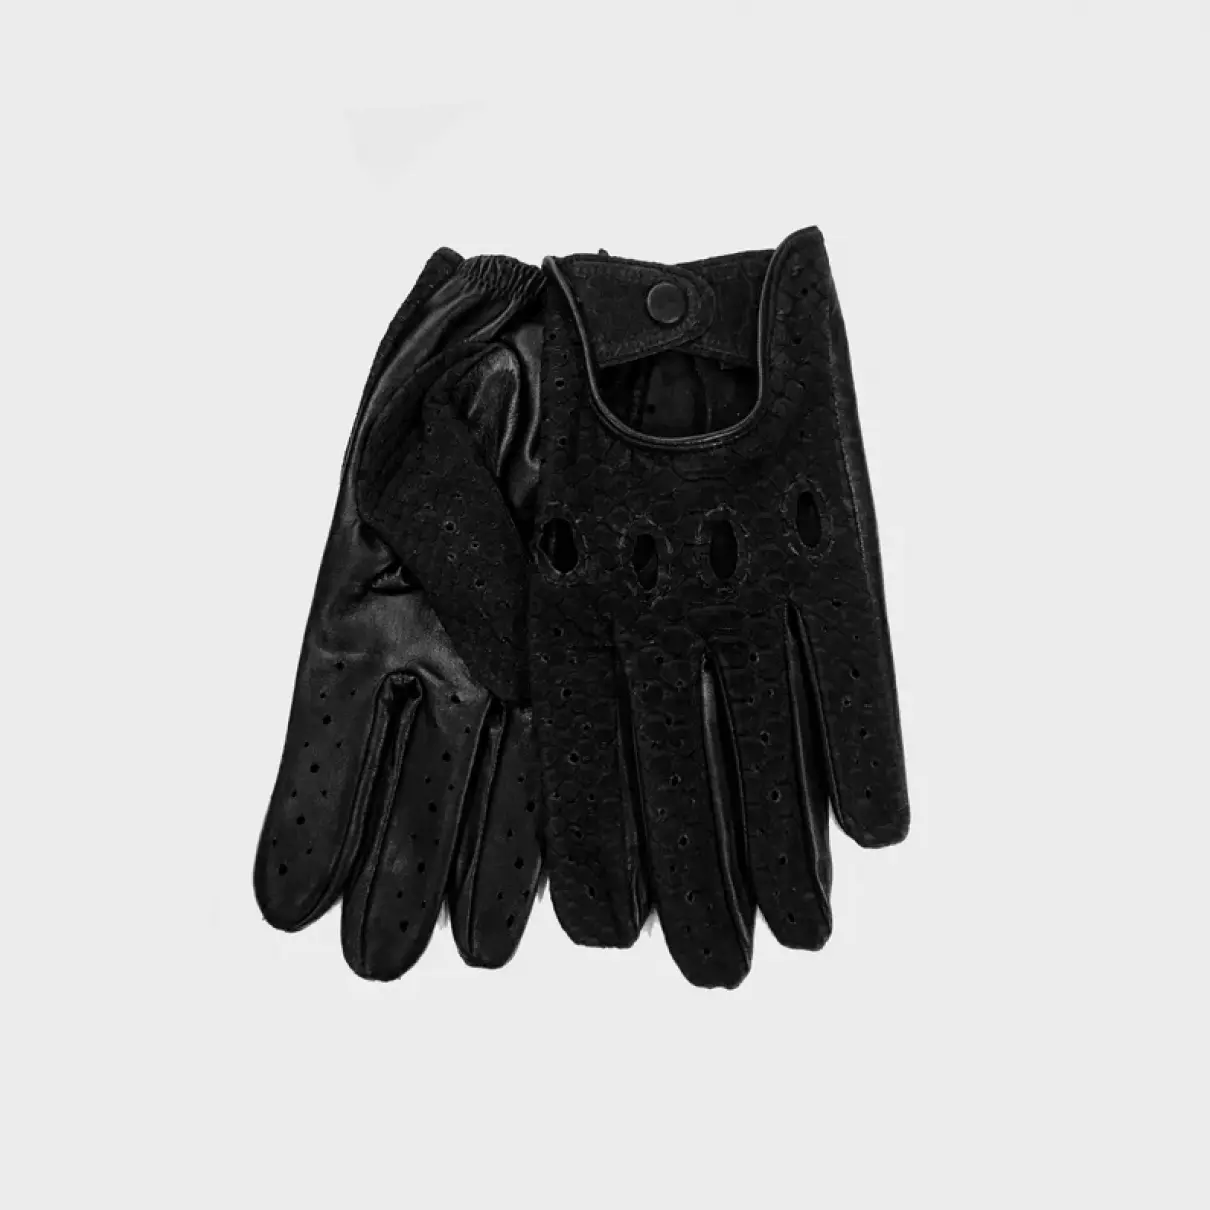 Buy Prototipo Python gloves online